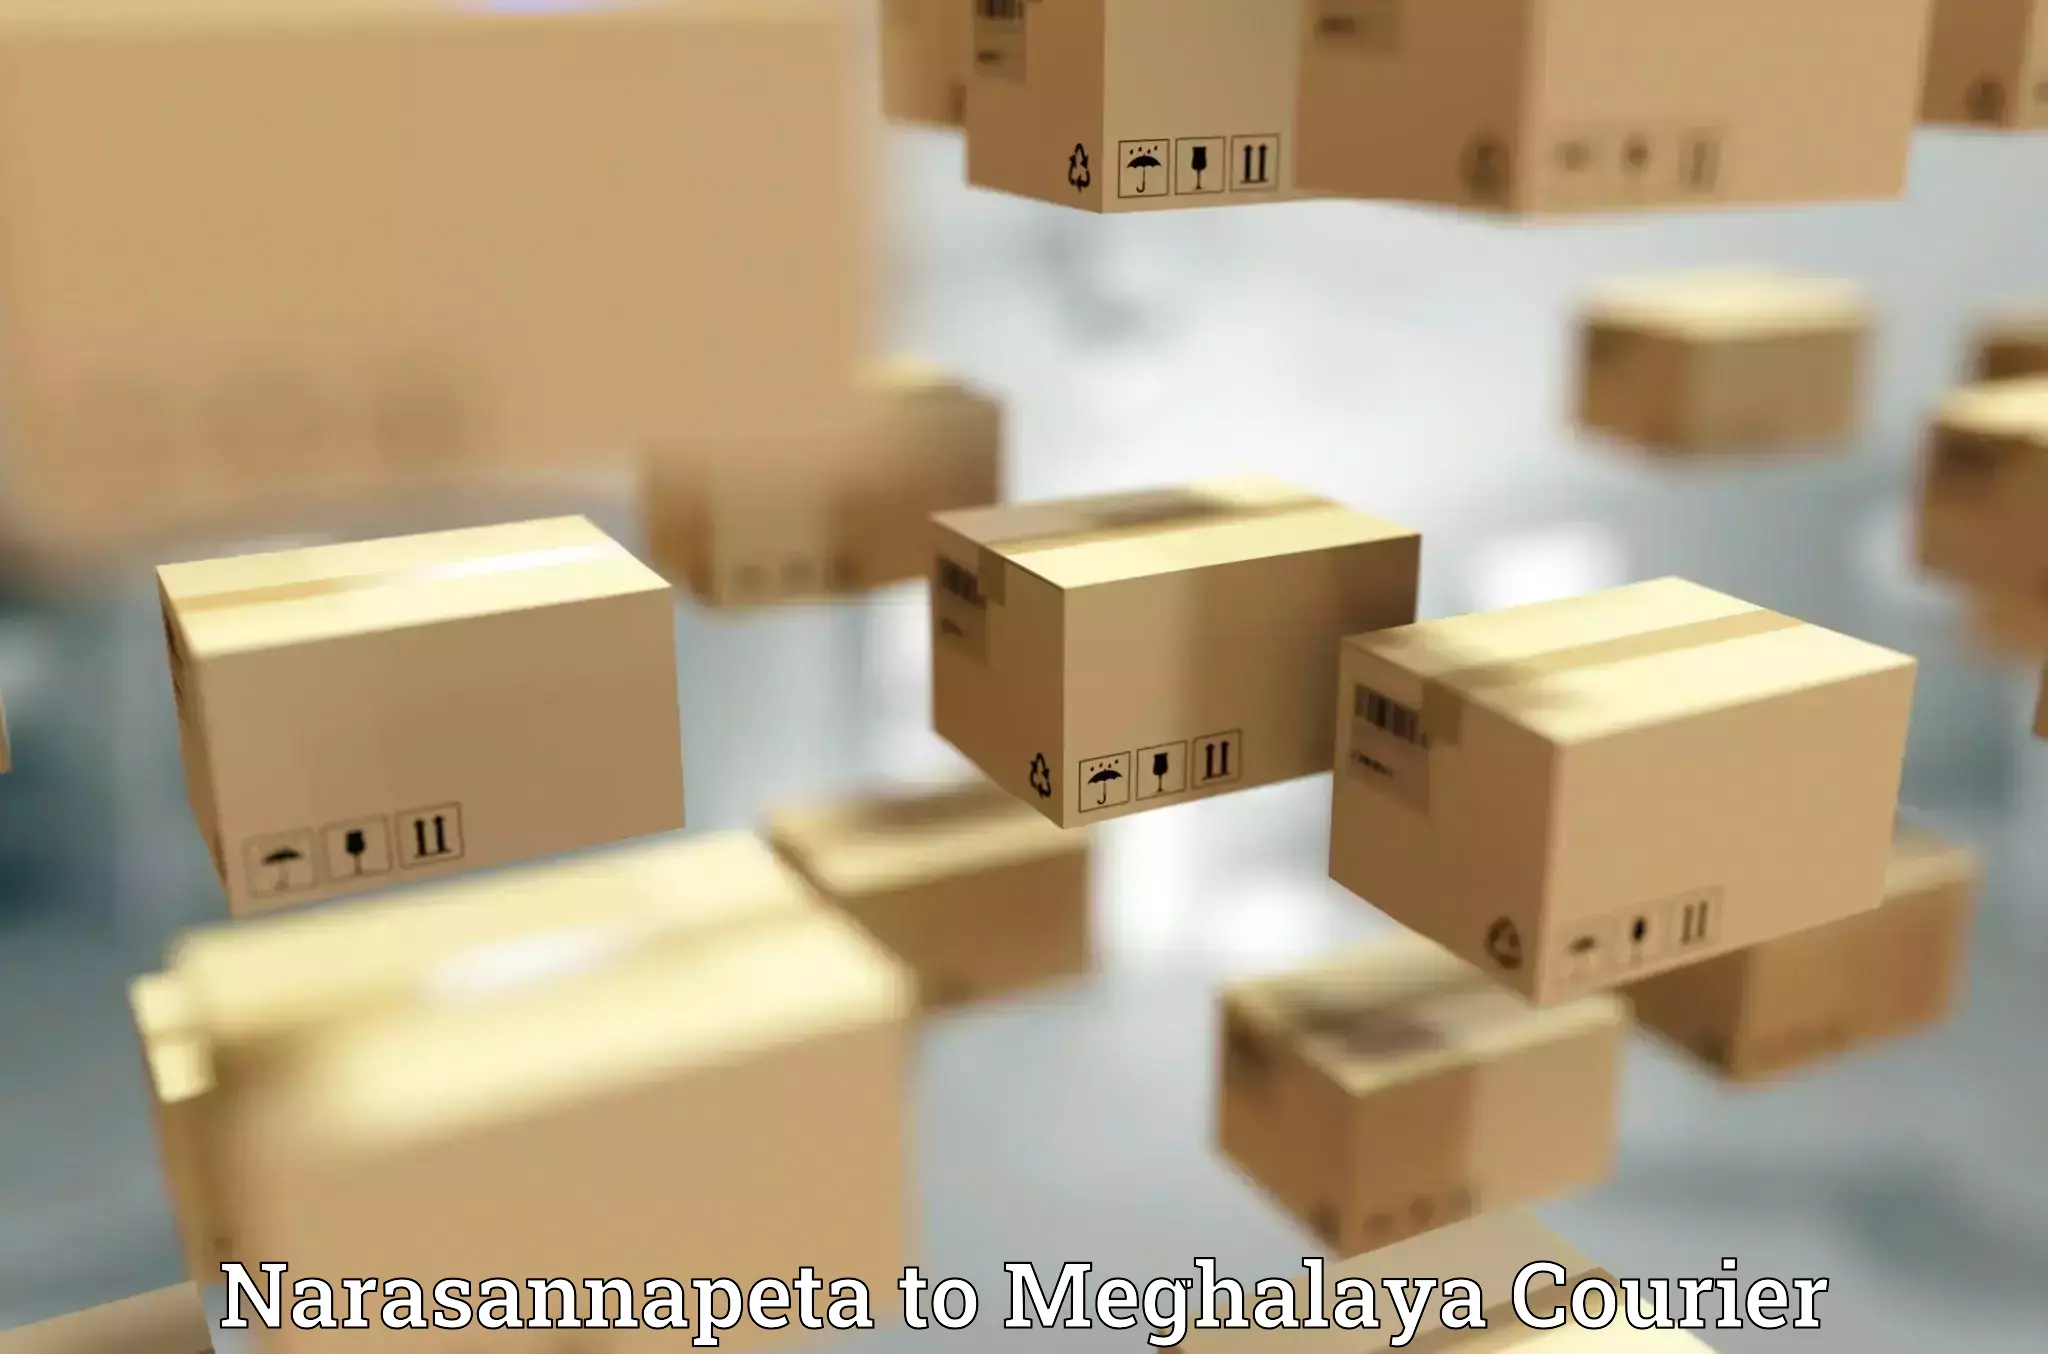 Urgent courier needs Narasannapeta to Meghalaya